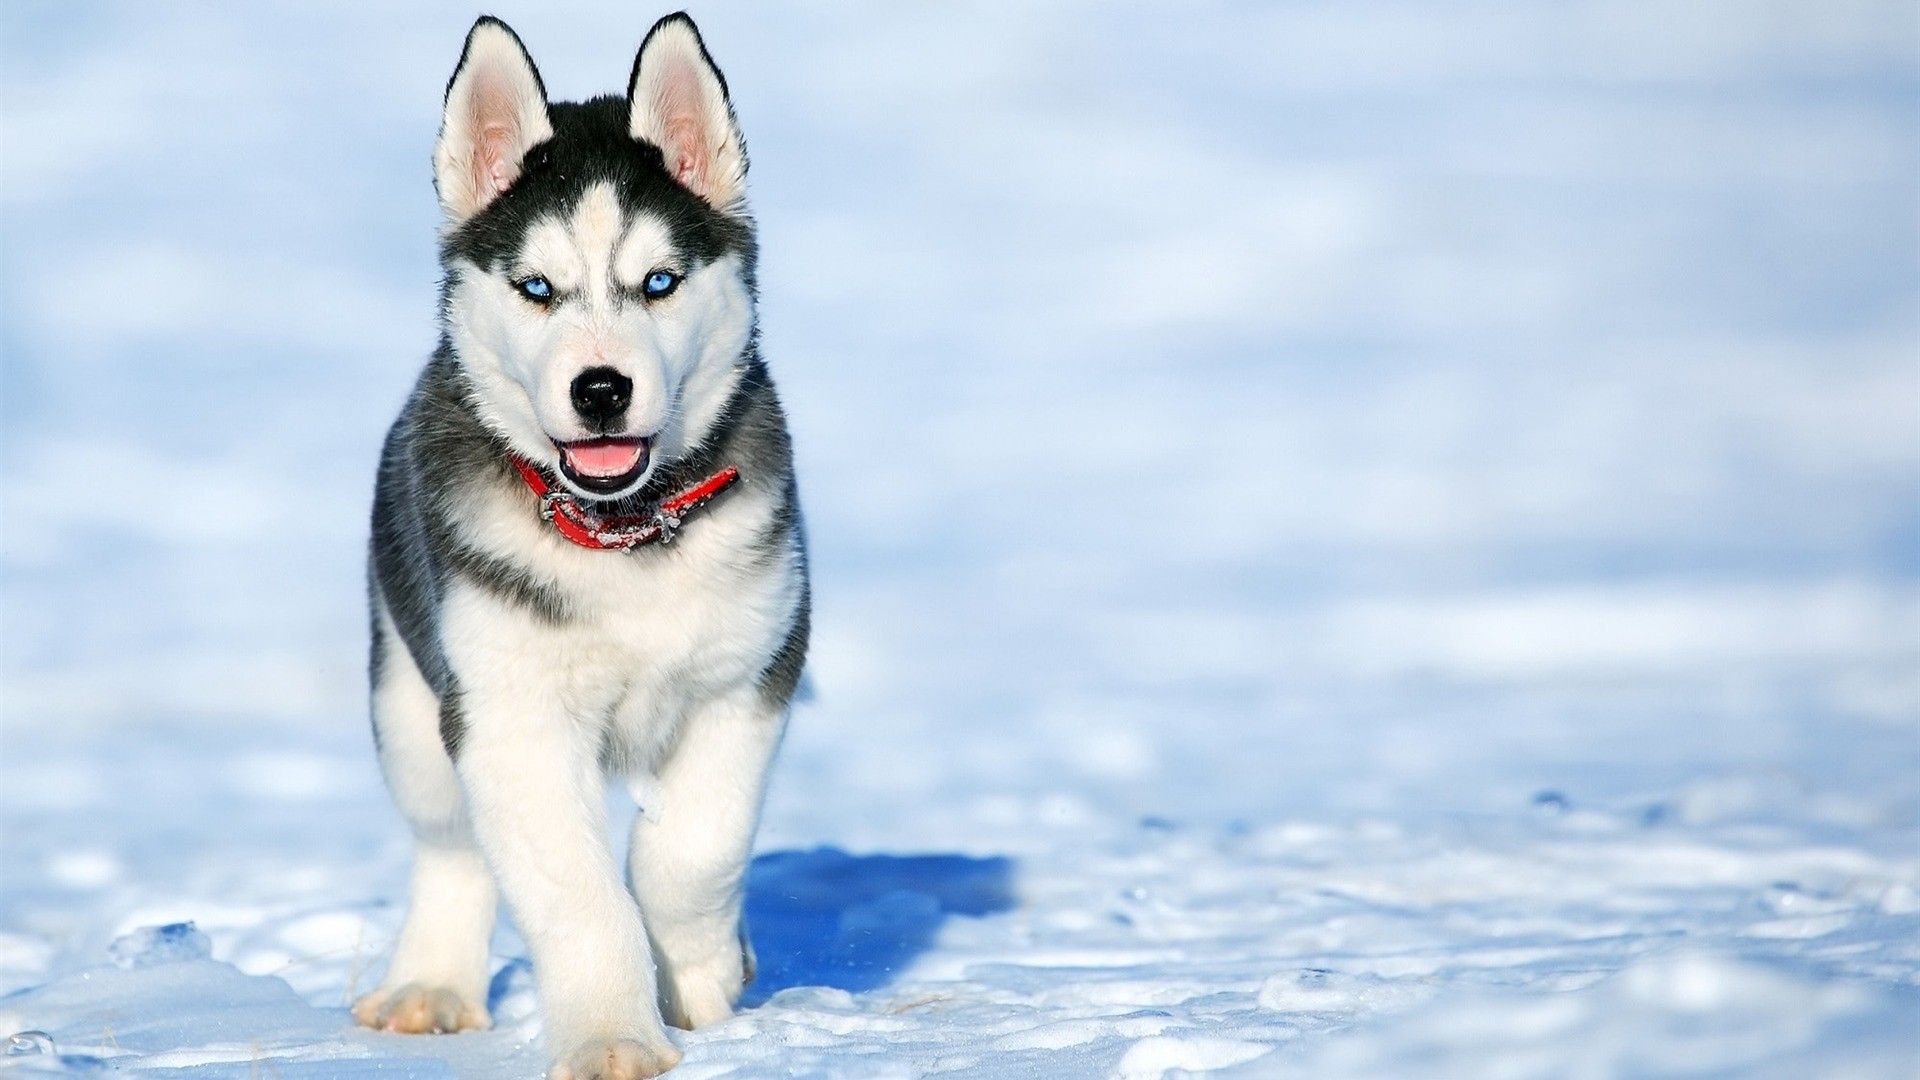 Siberian Husky Dog in Snow. HD Wallpaperhdnicewallpaper.com